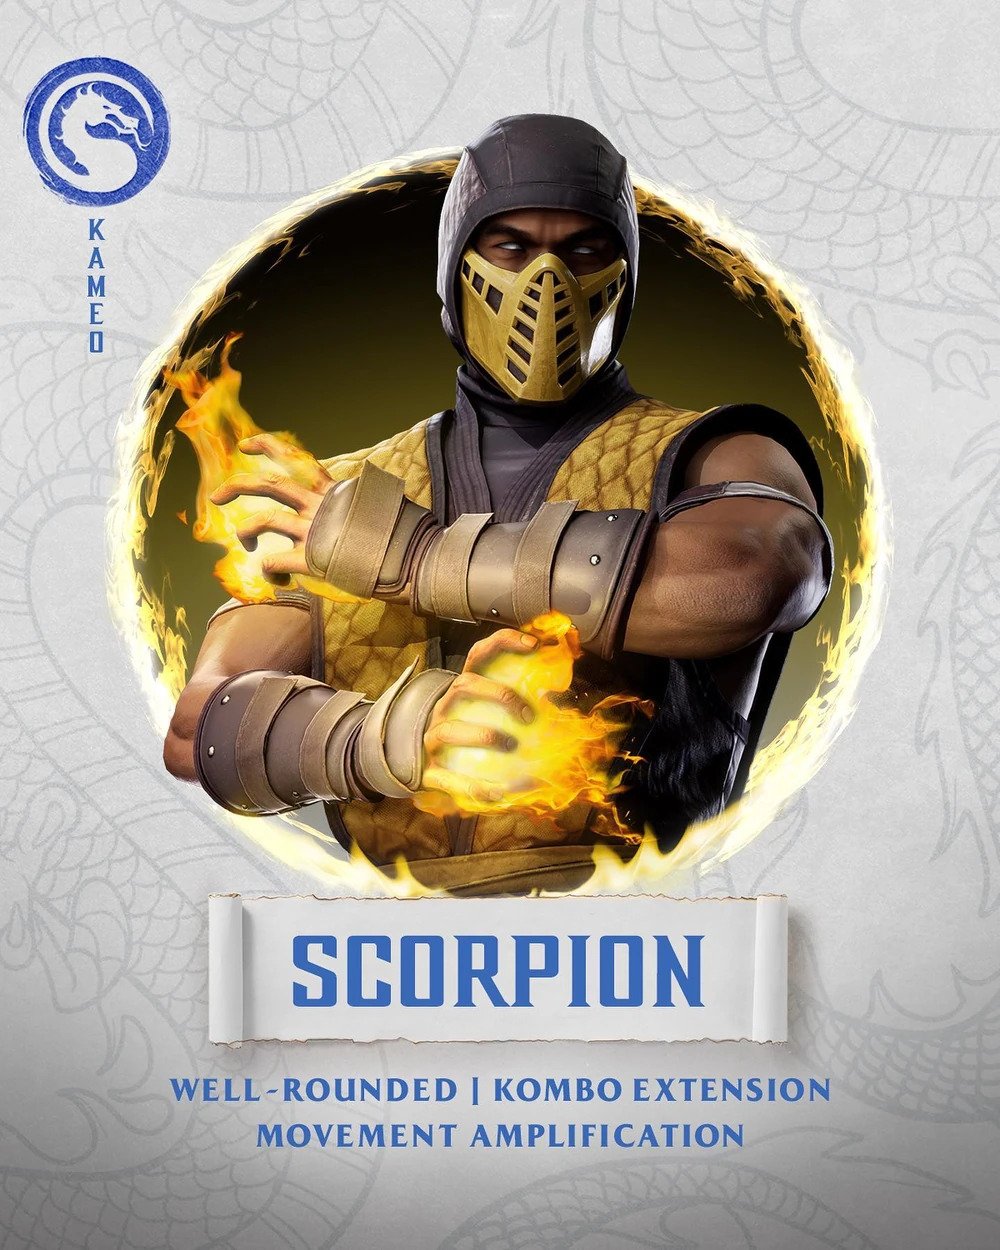 Scorpion (Mortal Kombat) - Wikipedia